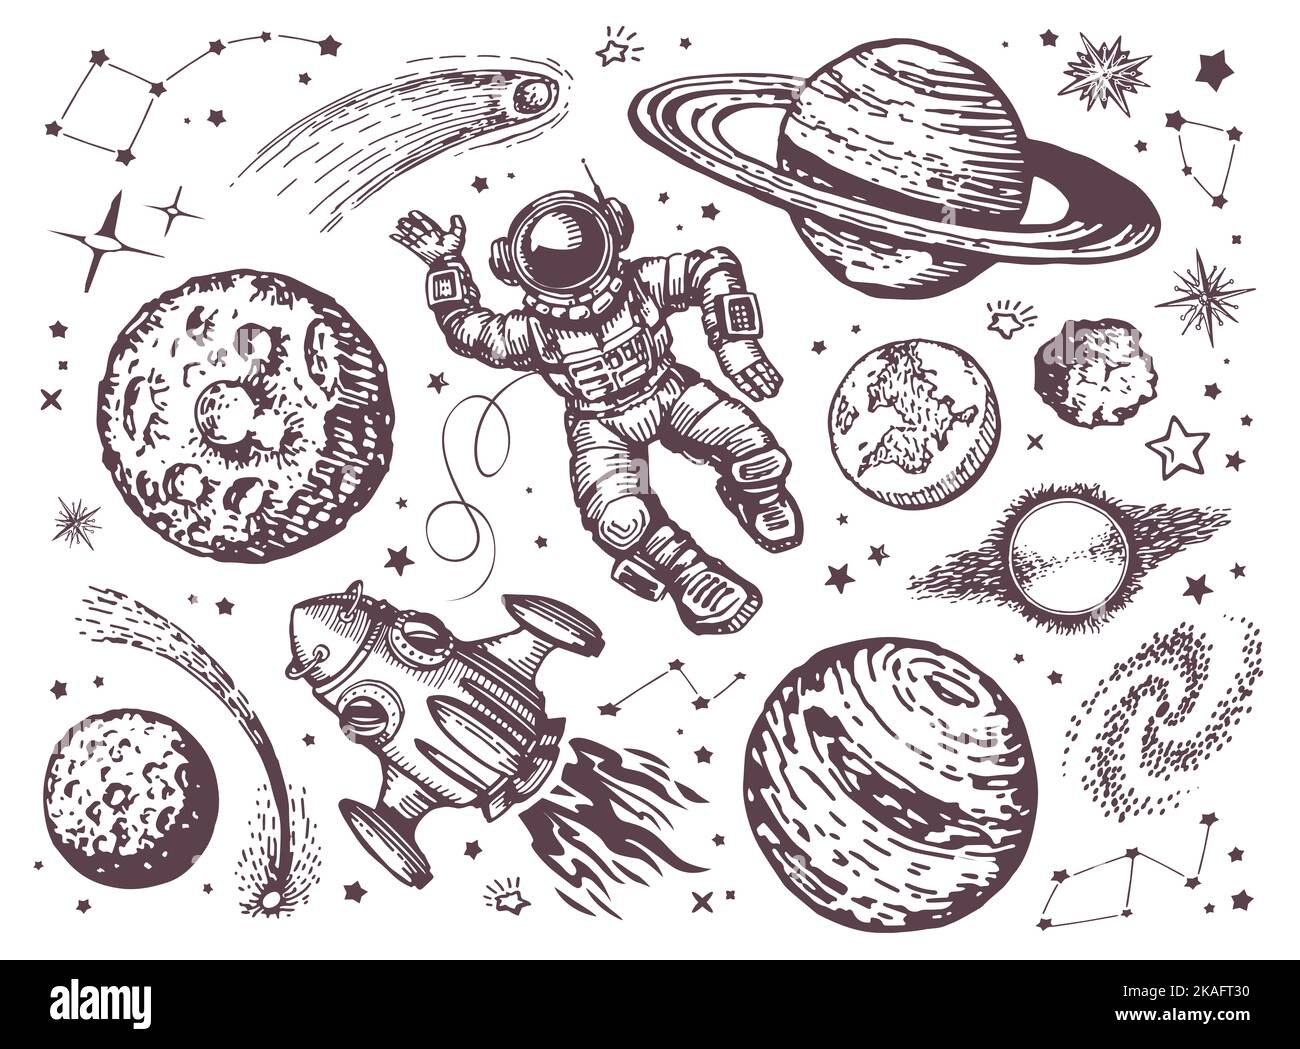 Spazio con pianeti, comete, costellazioni, stelle, astronauta e astronauta. Astronomia, disegno del concetto del cielo notturno vintage Foto Stock